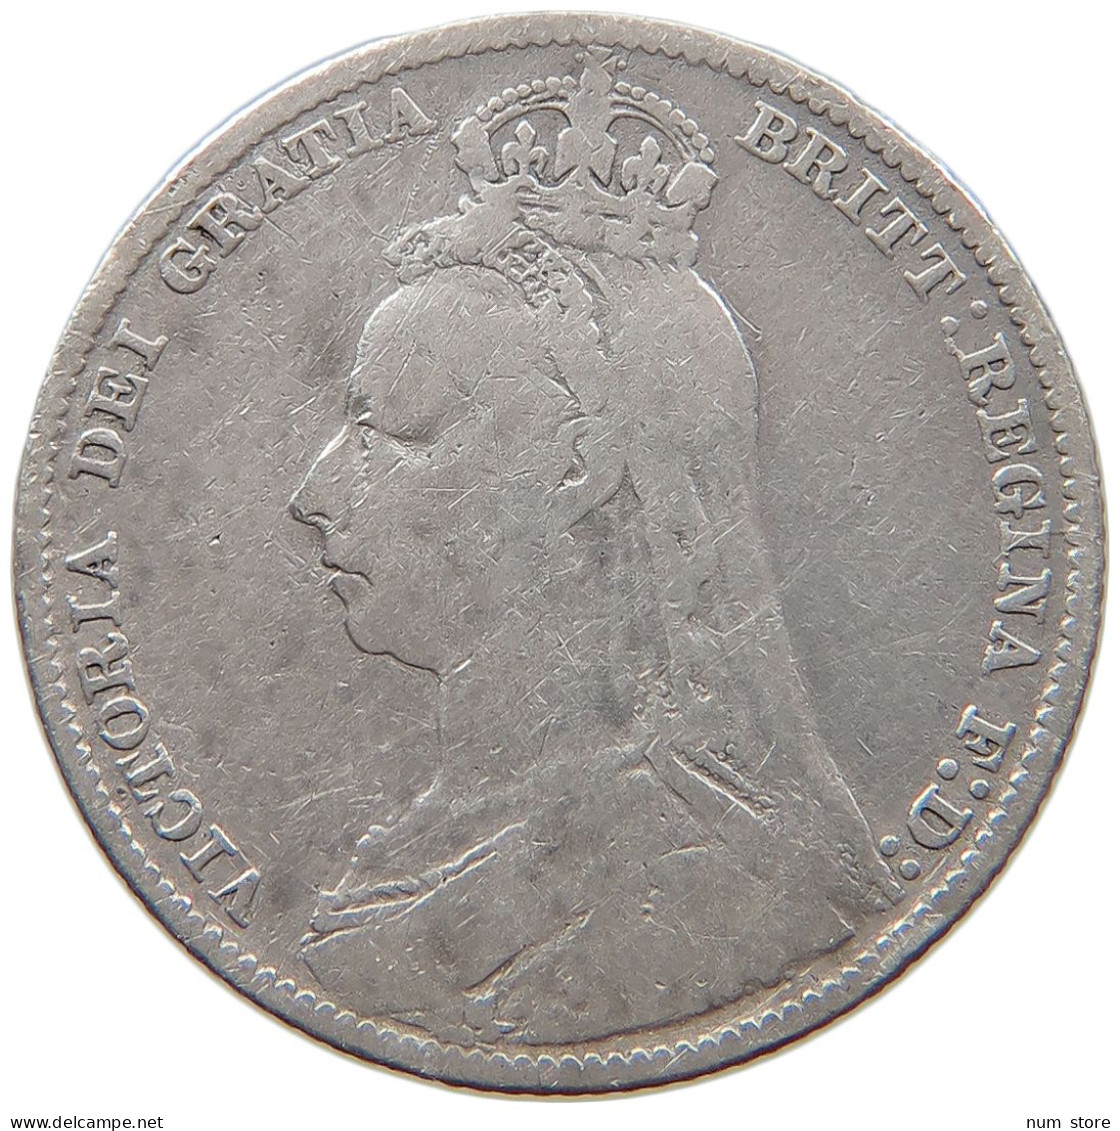 GREAT BRITAIN SHILLING 1890 Victoria 1837-1901 #c070 0363 - I. 1 Shilling